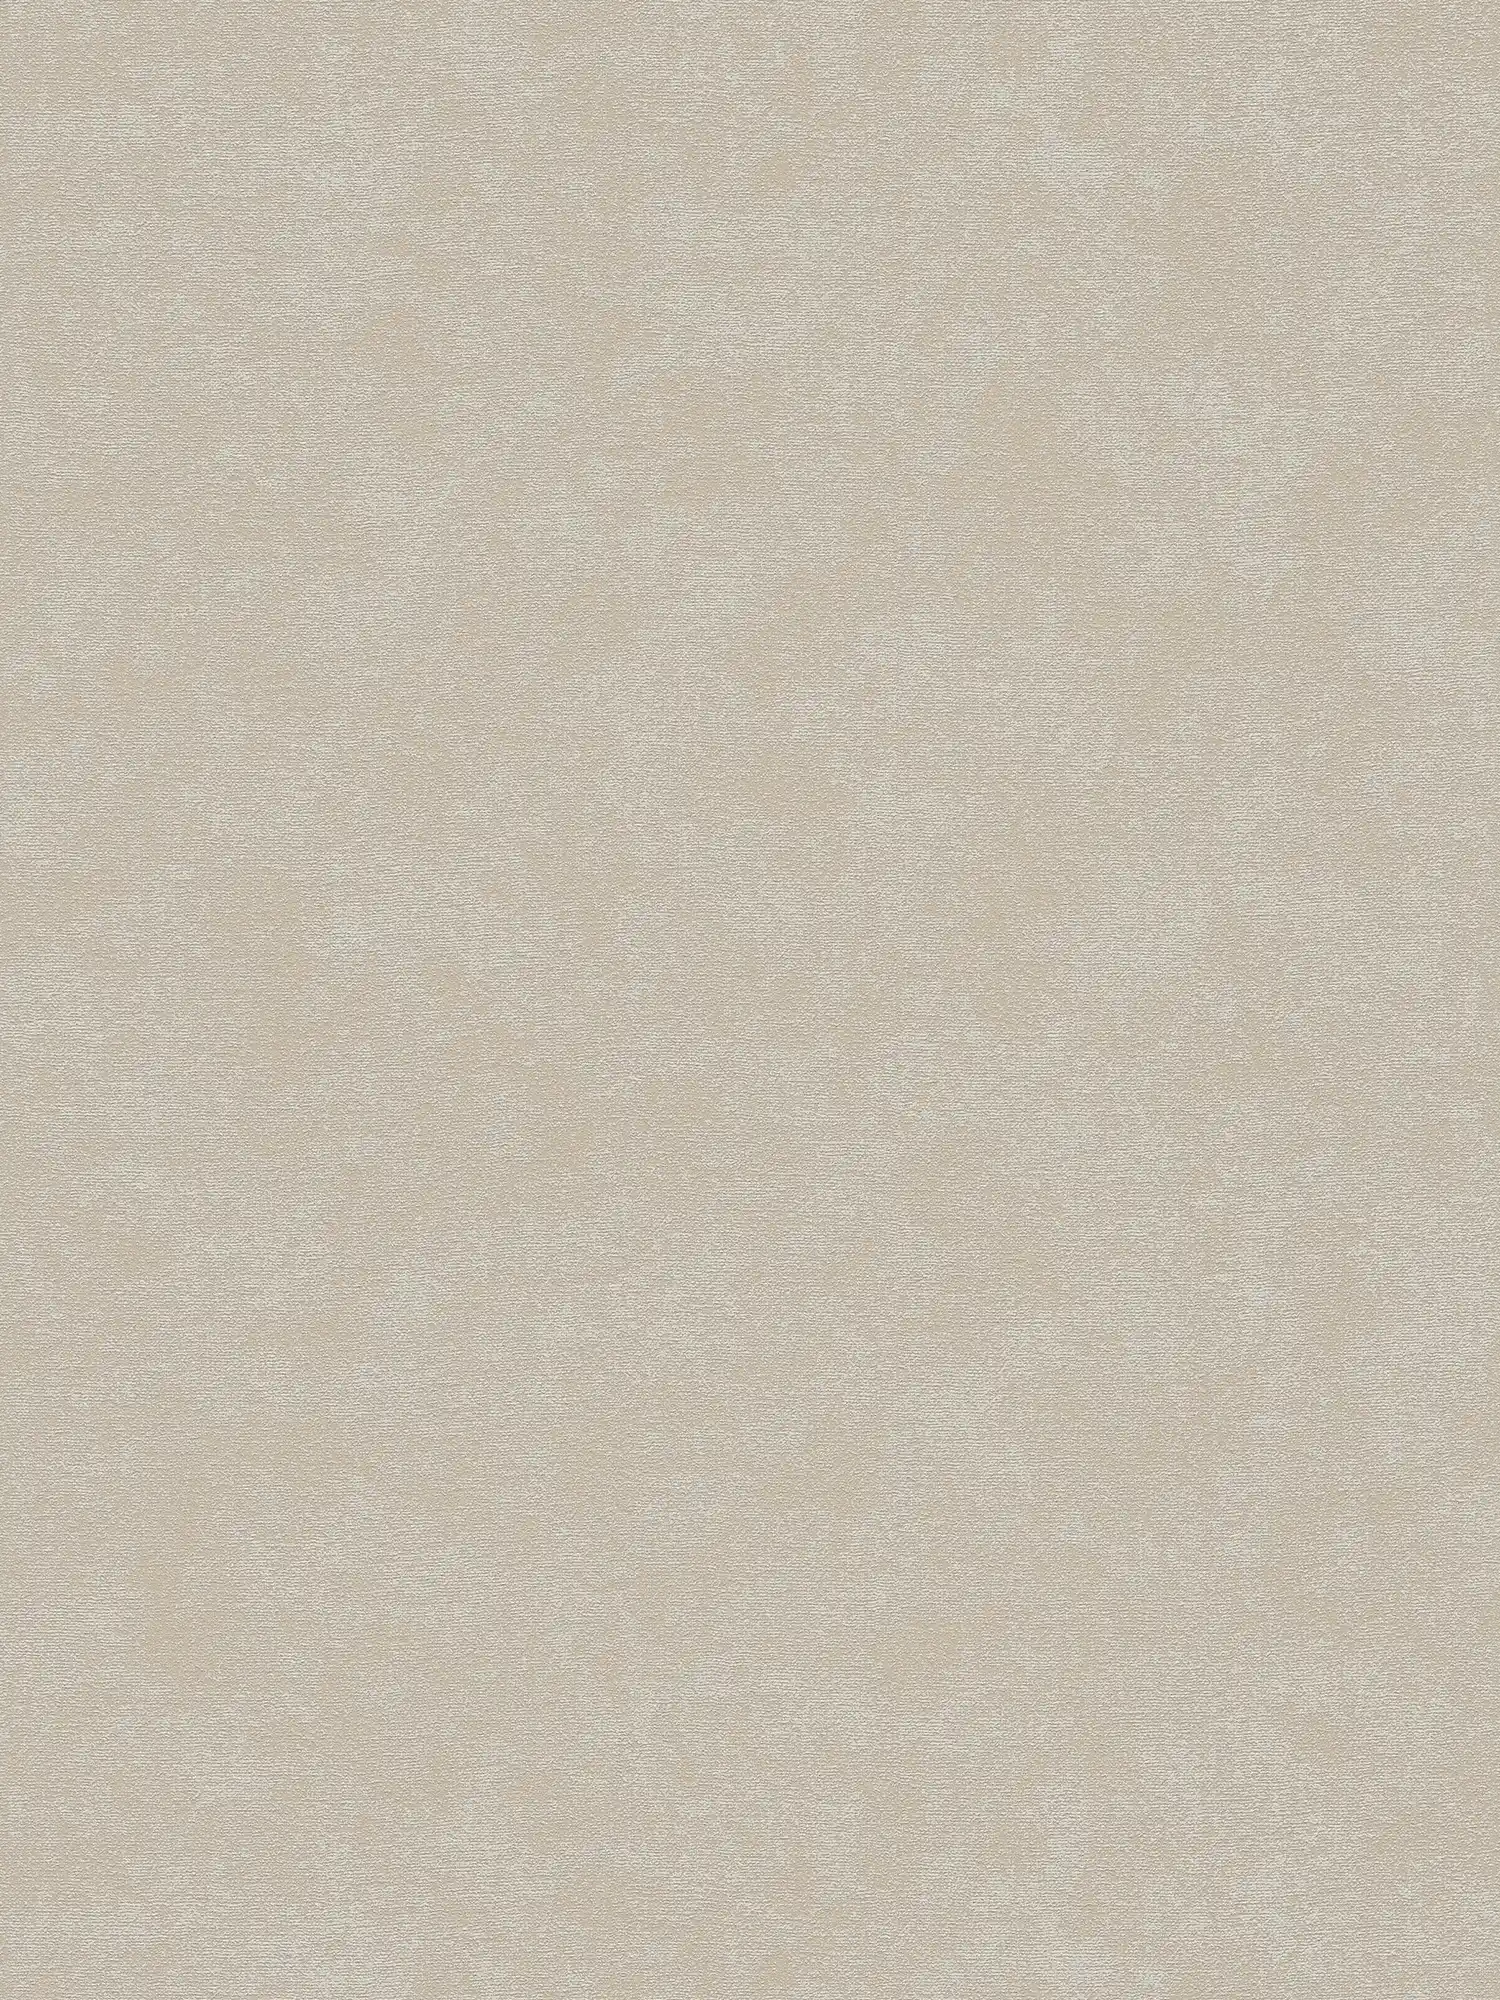 Carta da parati monocolore in tessuto non tessuto con texture leggera - grigio, beige
